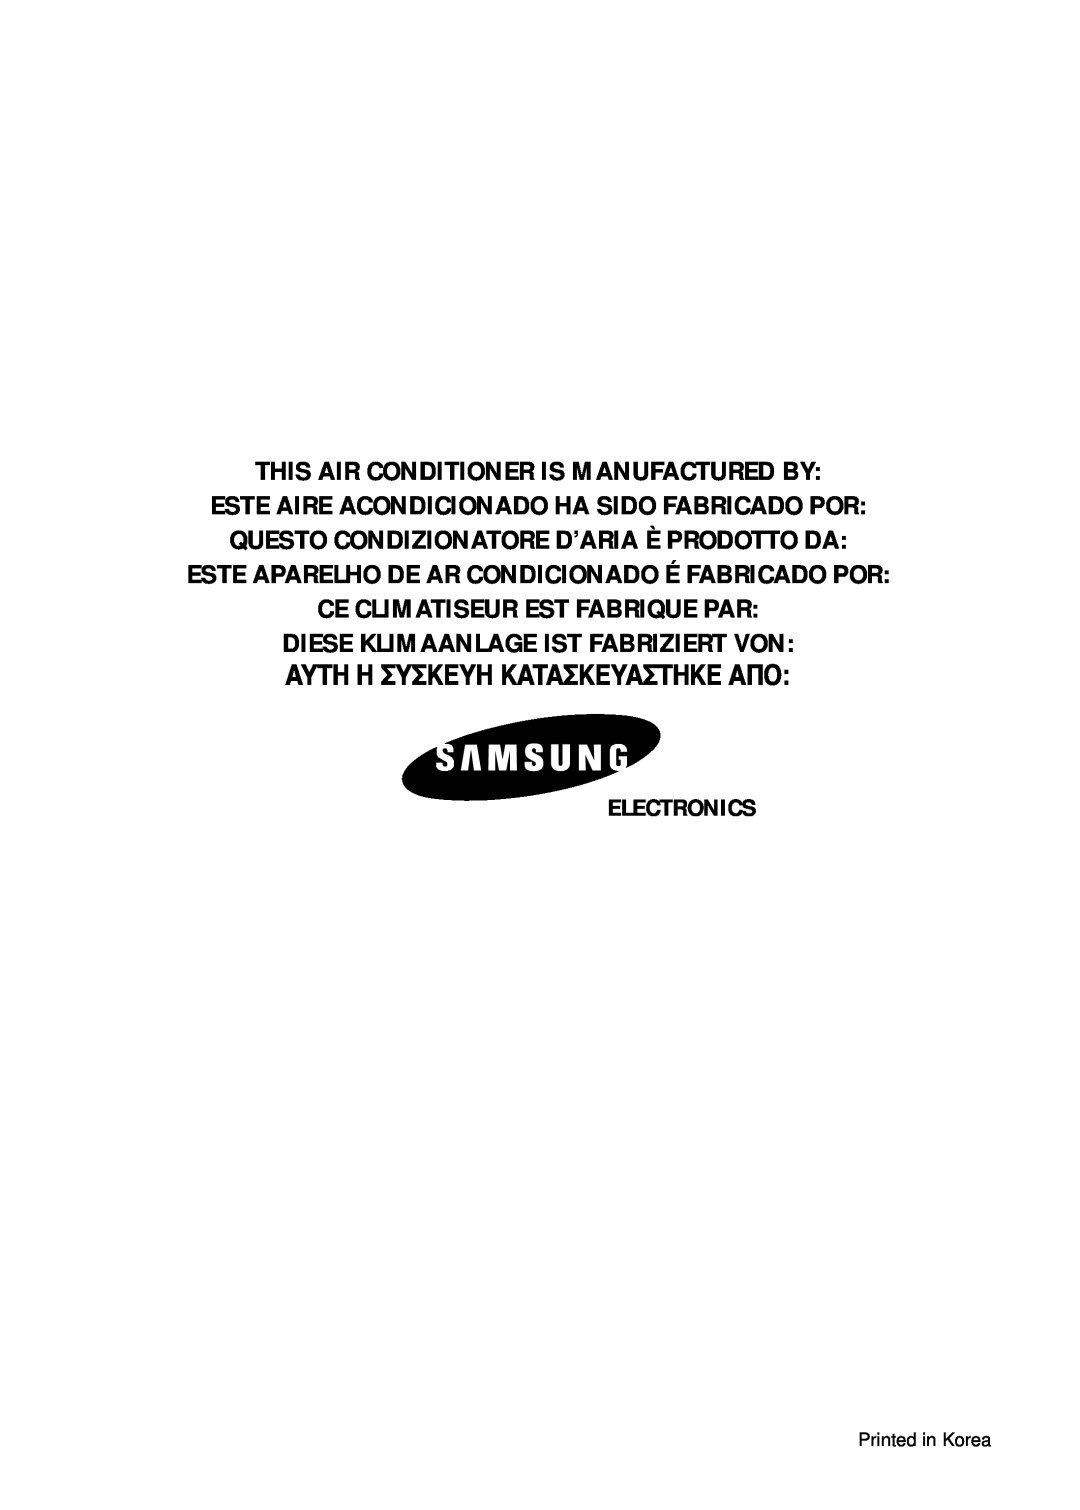 Samsung SC12ZB1 This Air Conditioner Is Manufactured By, Este Aparelho De Ar Condicionado É Fabricado Por, Electronics 